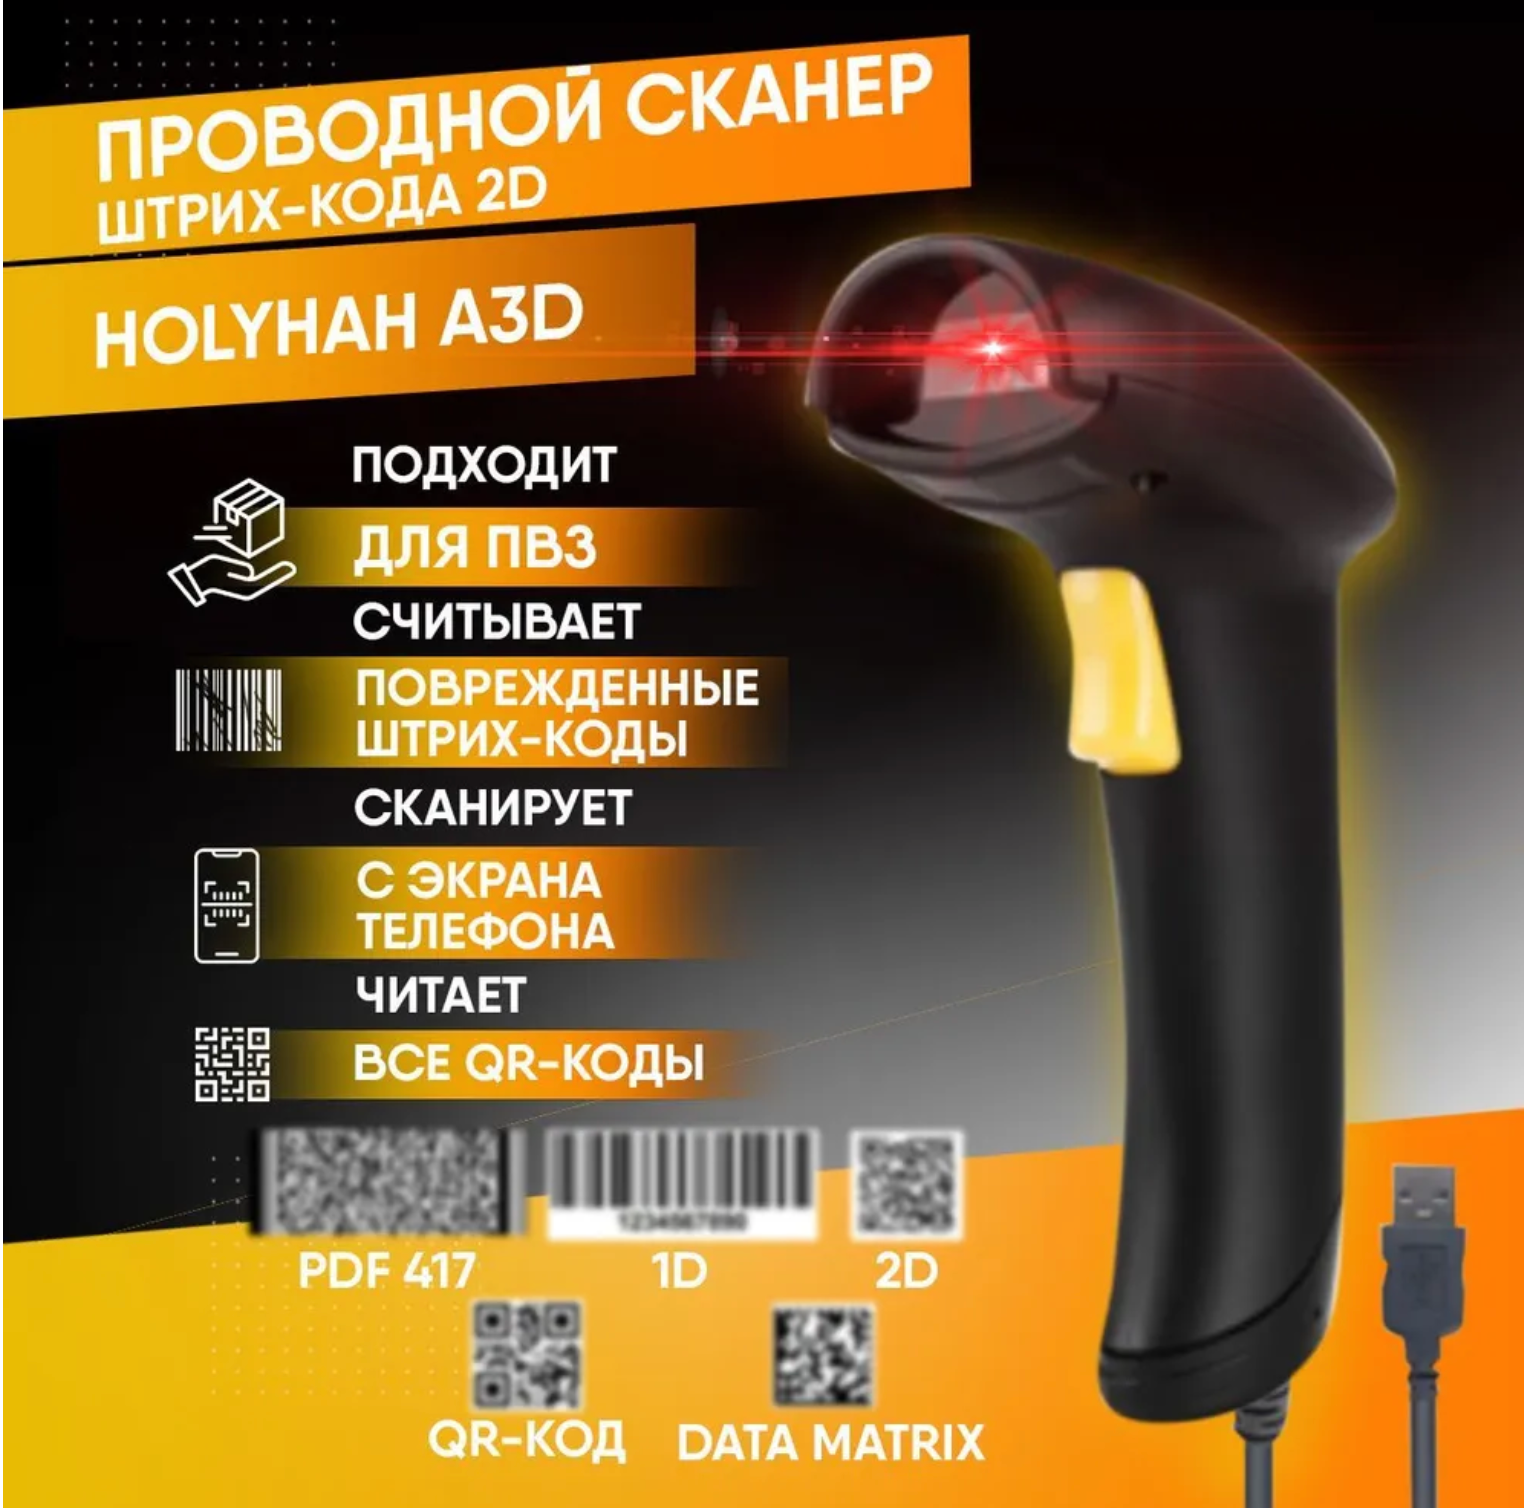 Проводной 2D сканер штрихкода Holyhah A3D (Маркировка, ЕГАИС, Честный знак, QR, Эвотор, Атол, Меркурий) для ПВЗ